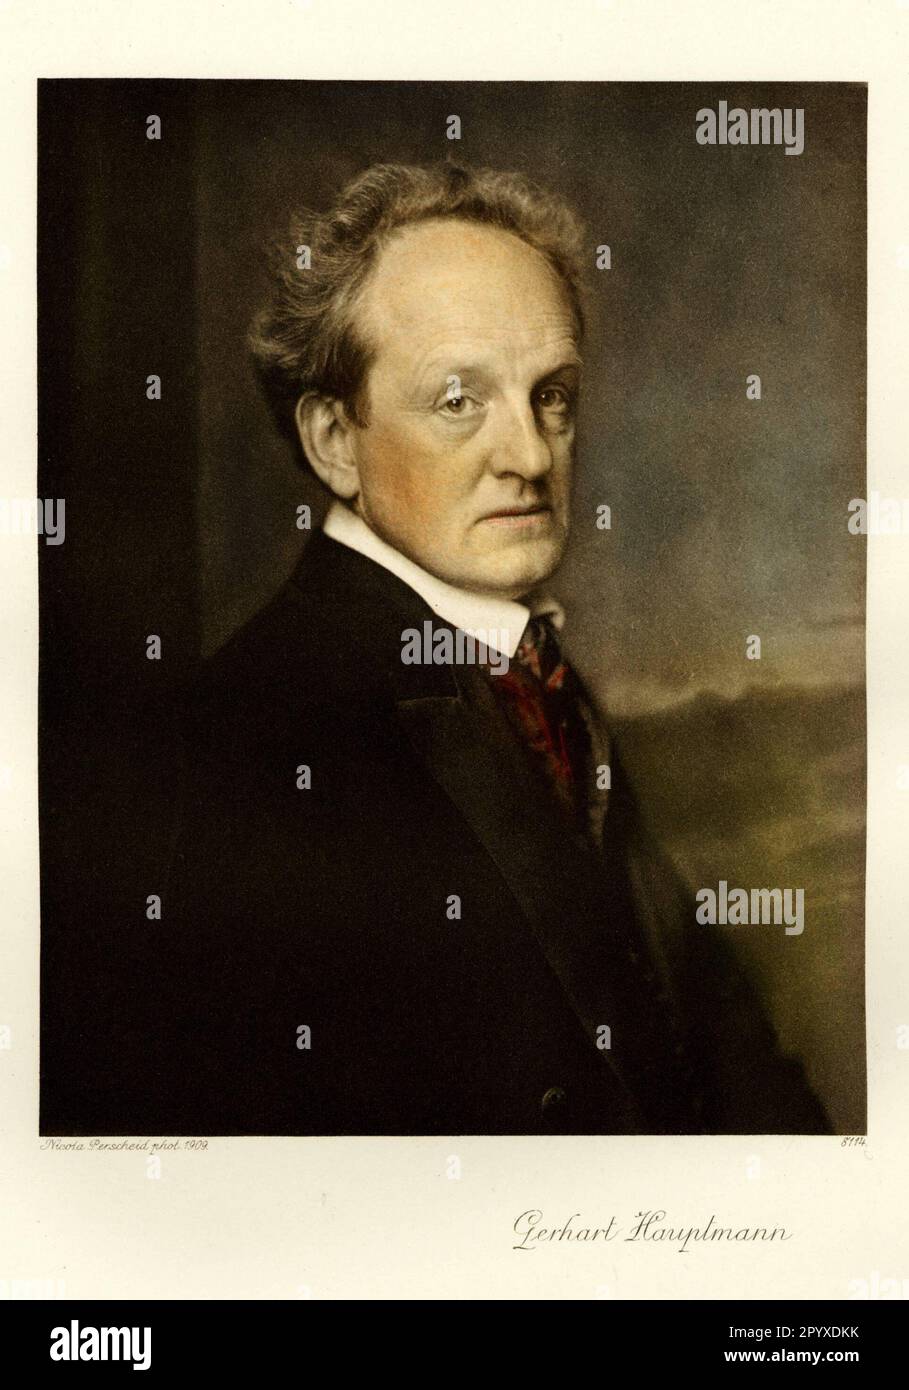 Gerhart Hauptmann (1862-1946), écrivain allemand. Photographie de Nicola Perscheid de 1909. Photo: Heliogravure, Corpus Imaginum, Collection Hanfstaengl. [traduction automatique] Banque D'Images